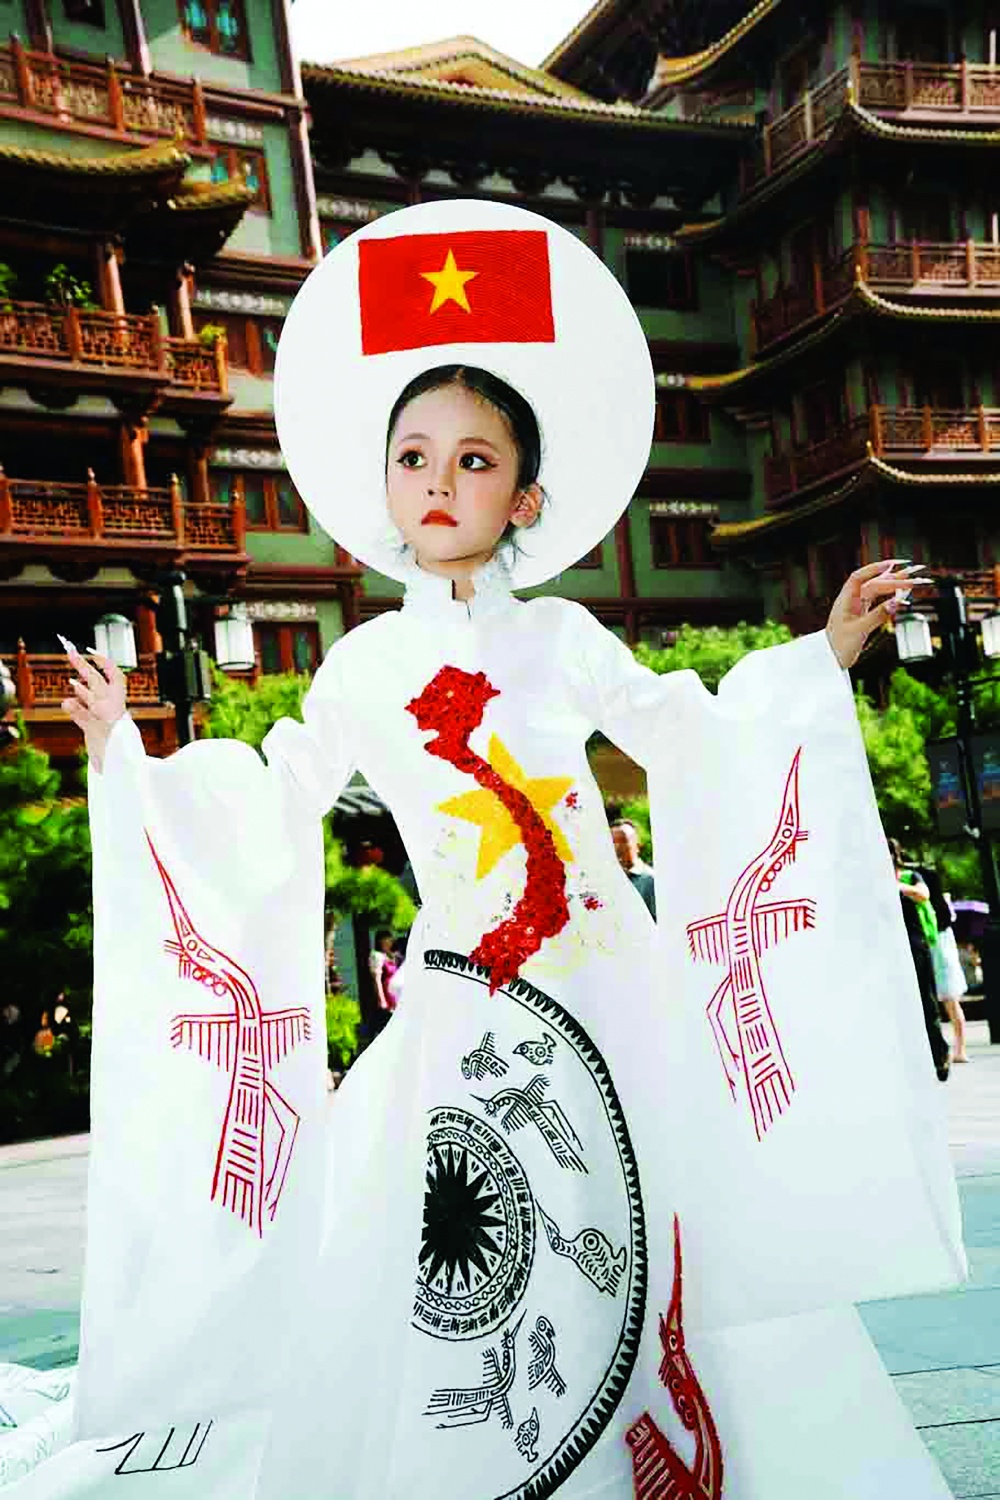 Mẫu nhí Nguyễn Nhật Ánh trong trang phục áo dài với hình ảnh bản đồ và Quốc kỳ Việt Nam ở ngay trung tâm thành phố Quảng Châu, Trung Quốc